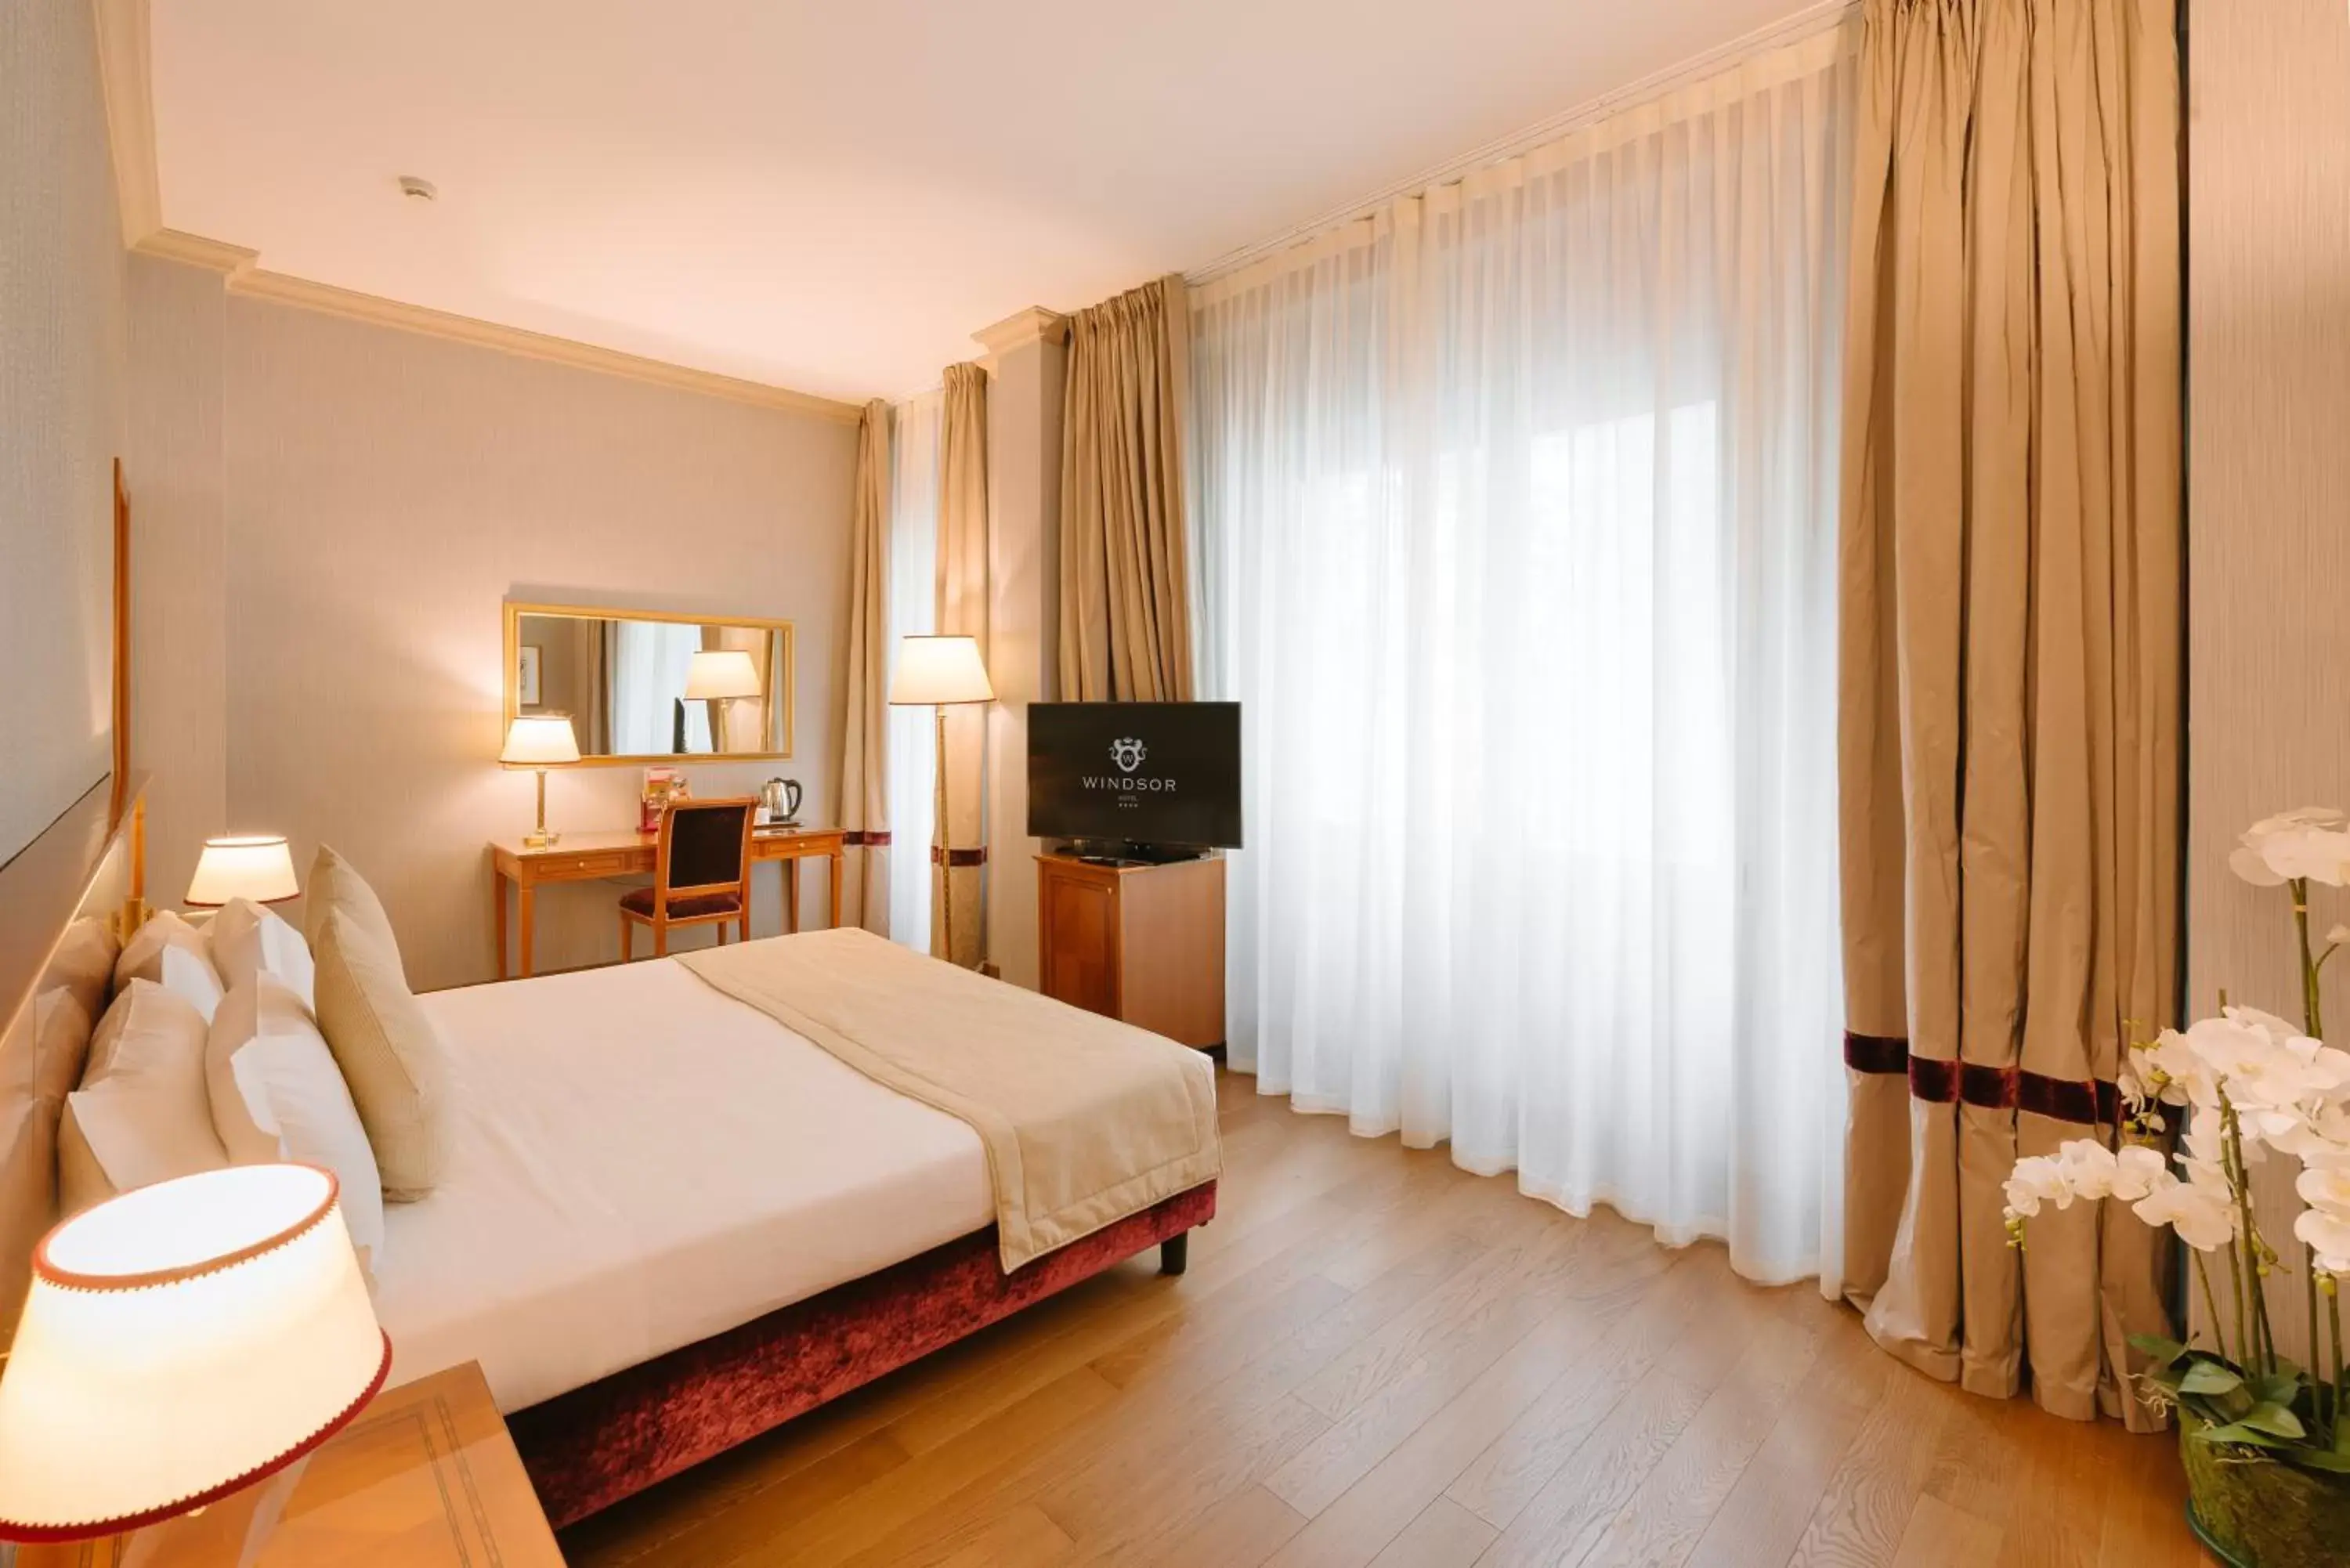 Bedroom, Room Photo in Windsor Hotel Milano